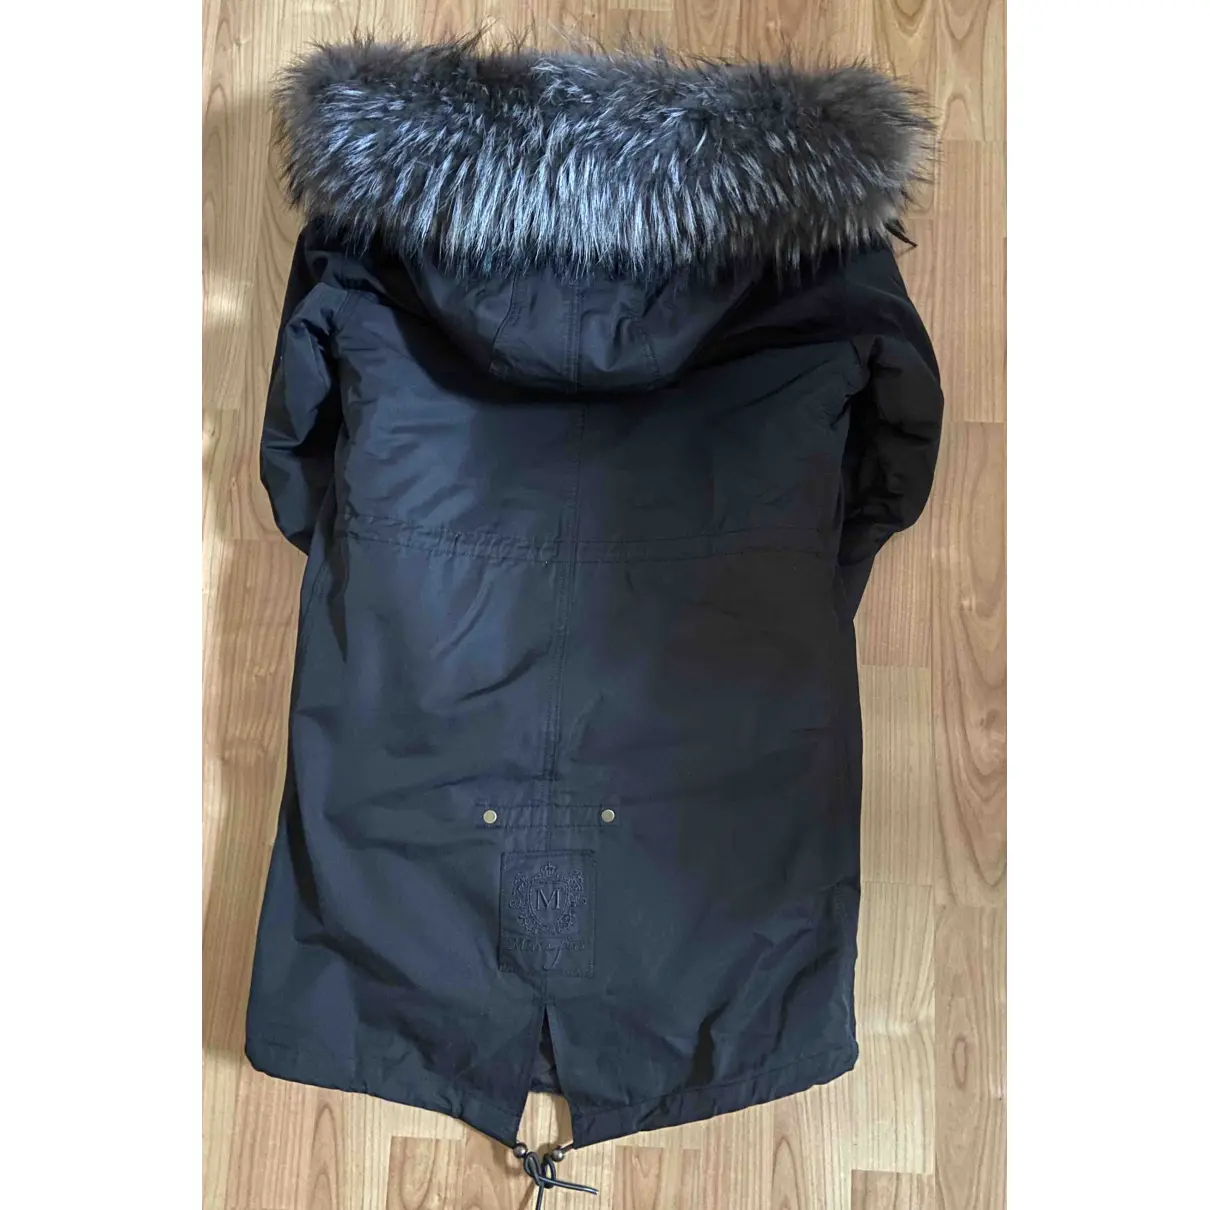 Black Cotton Coat Mr & Mrs Furs